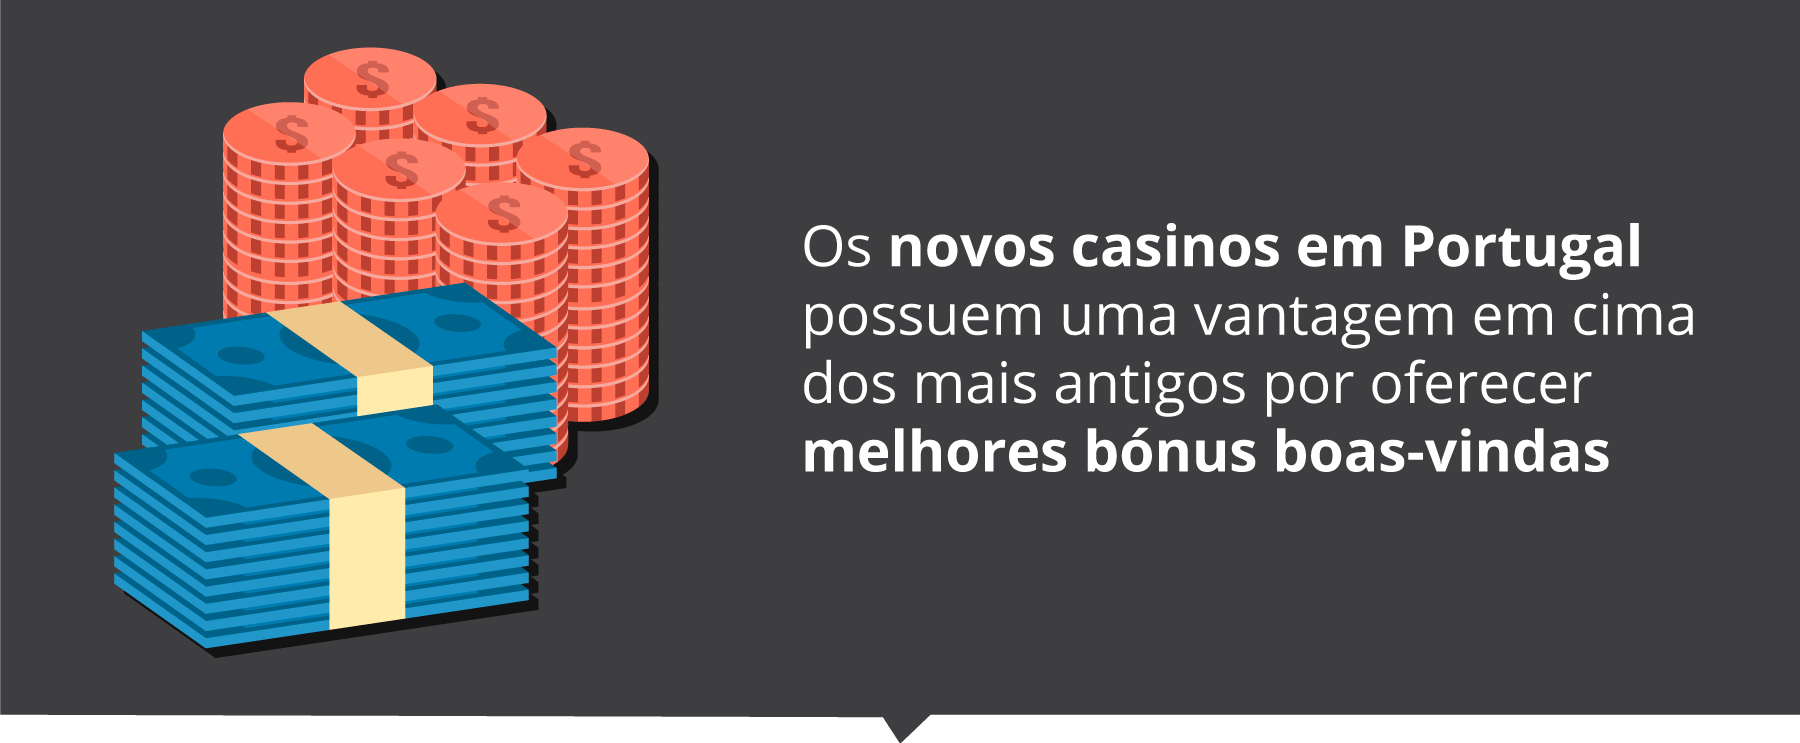 casino online vip